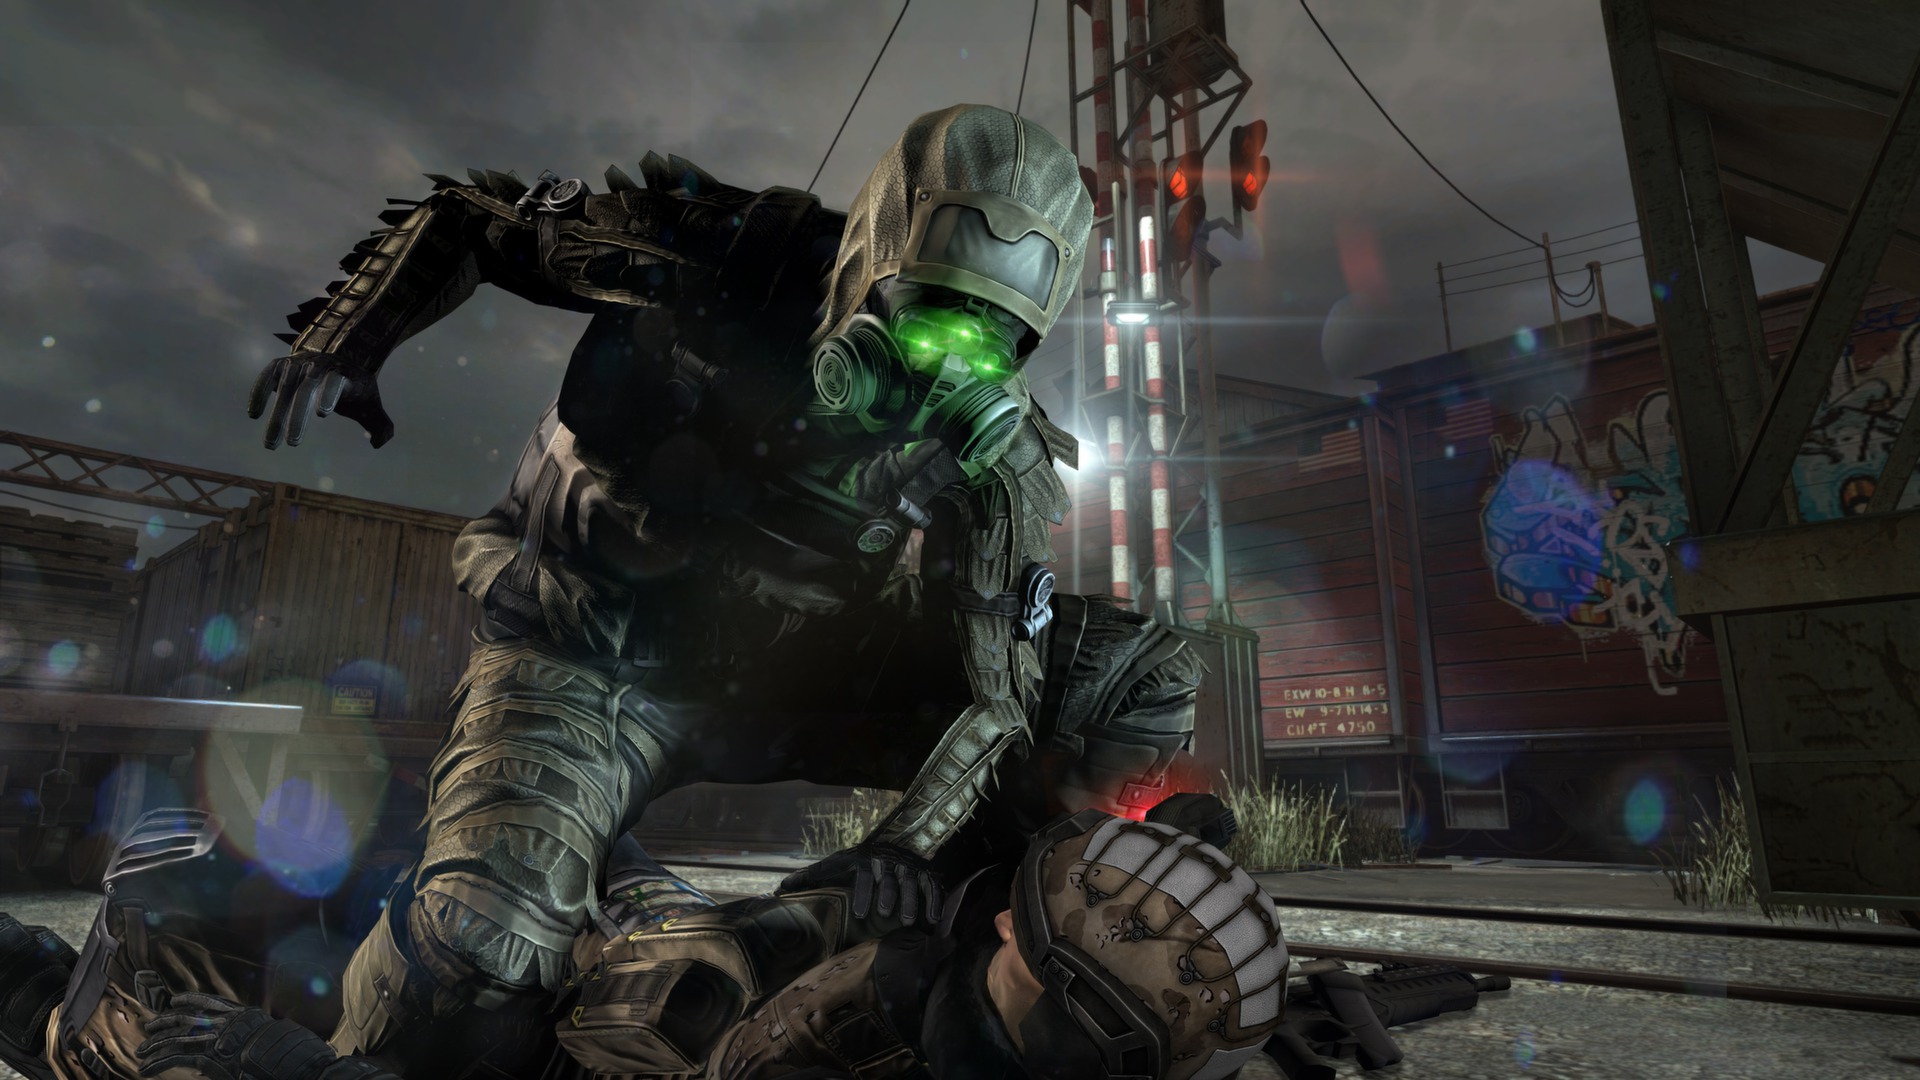 Save 75% on Tom Clancy's Splinter Cell Blacklist on Steam